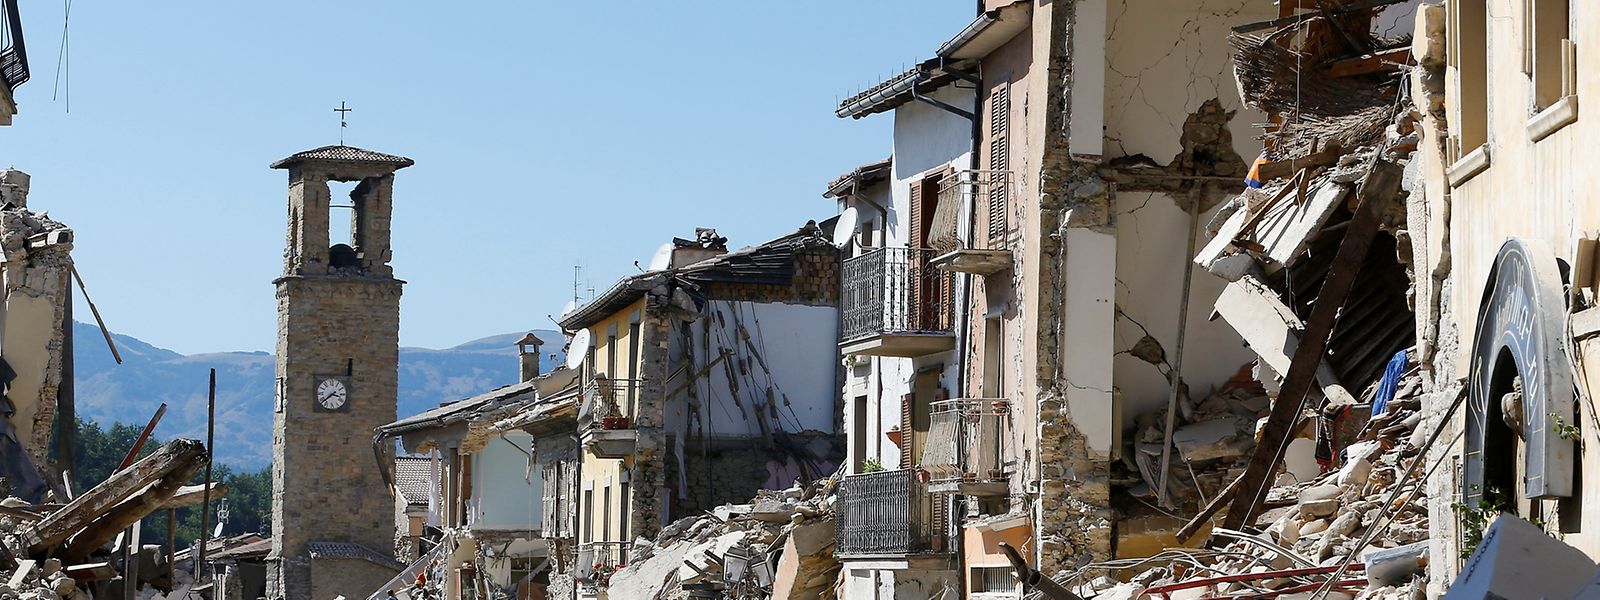 Nach Erdbeben: Italienische Stadt verklagt "Charlie Hebdo"